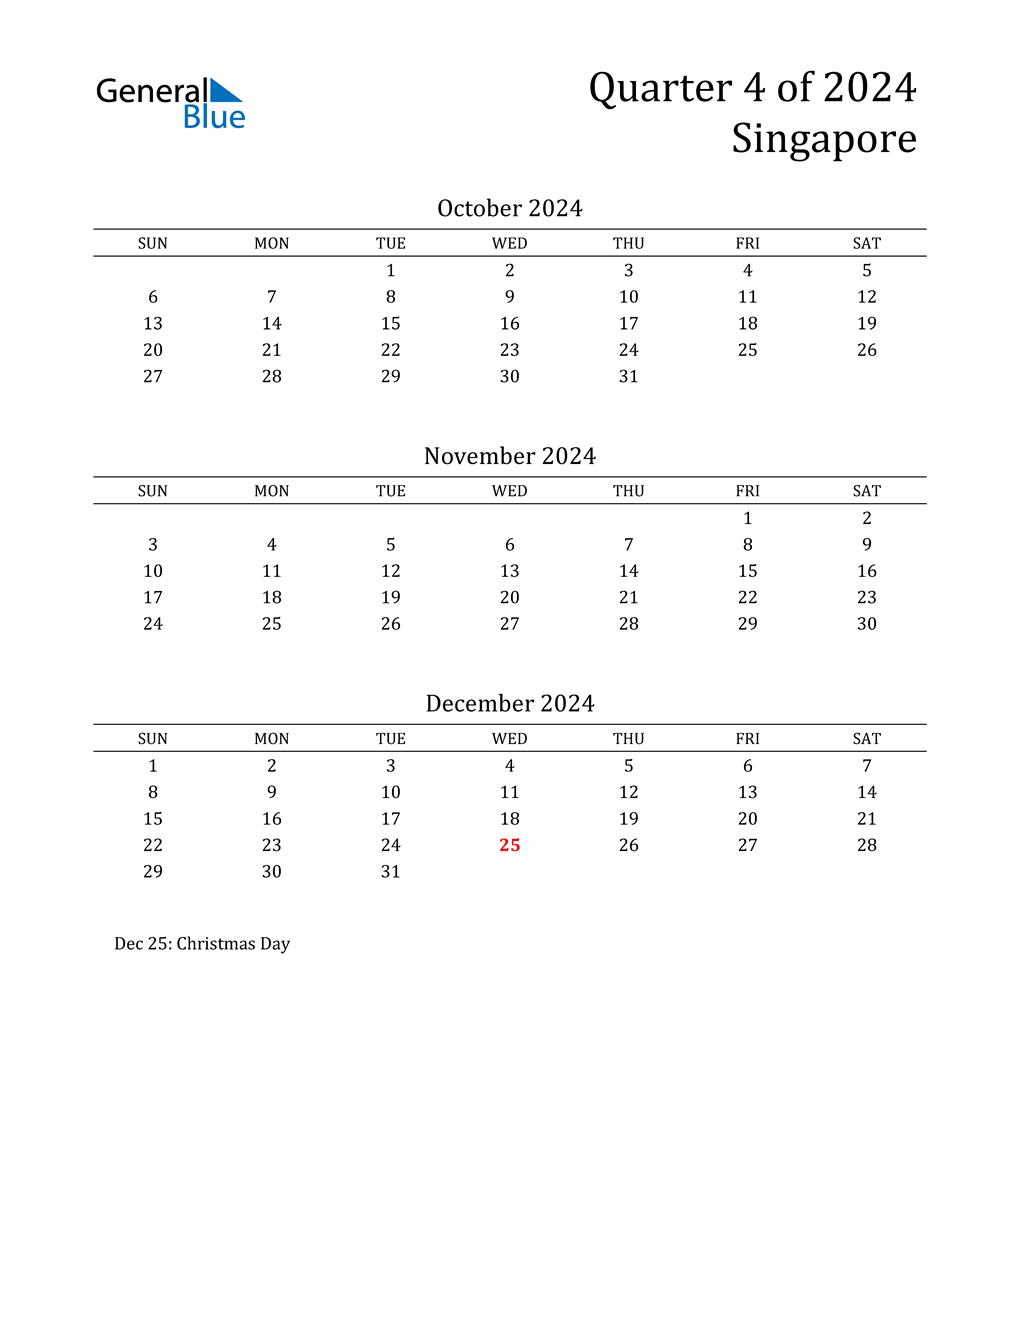 Q4 2024 Quarterly Calendar with Singapore Holidays